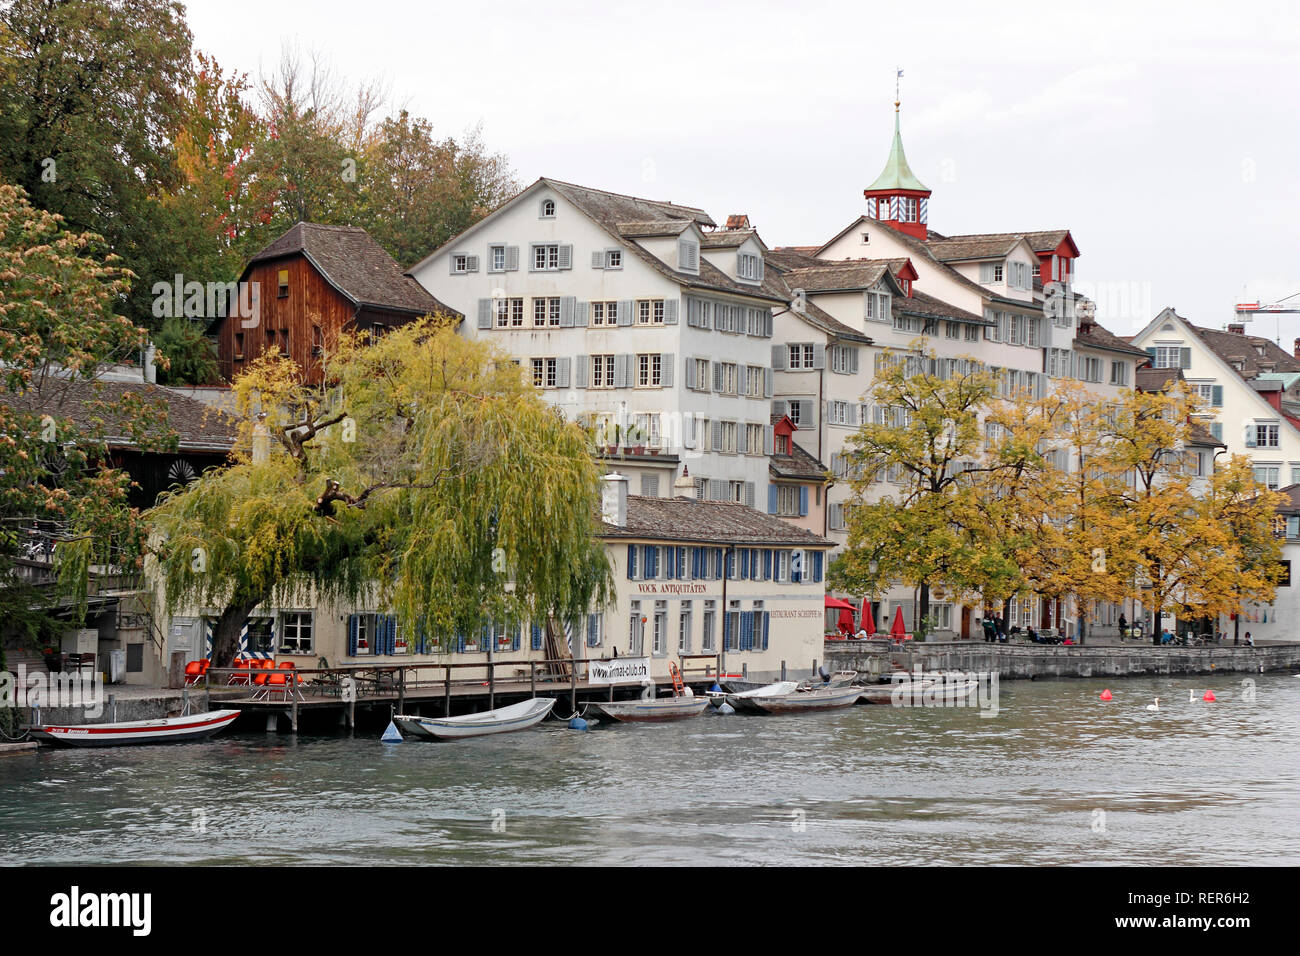 Zurigo e Lago di Lemano: la capolista e il Servette vincono i due